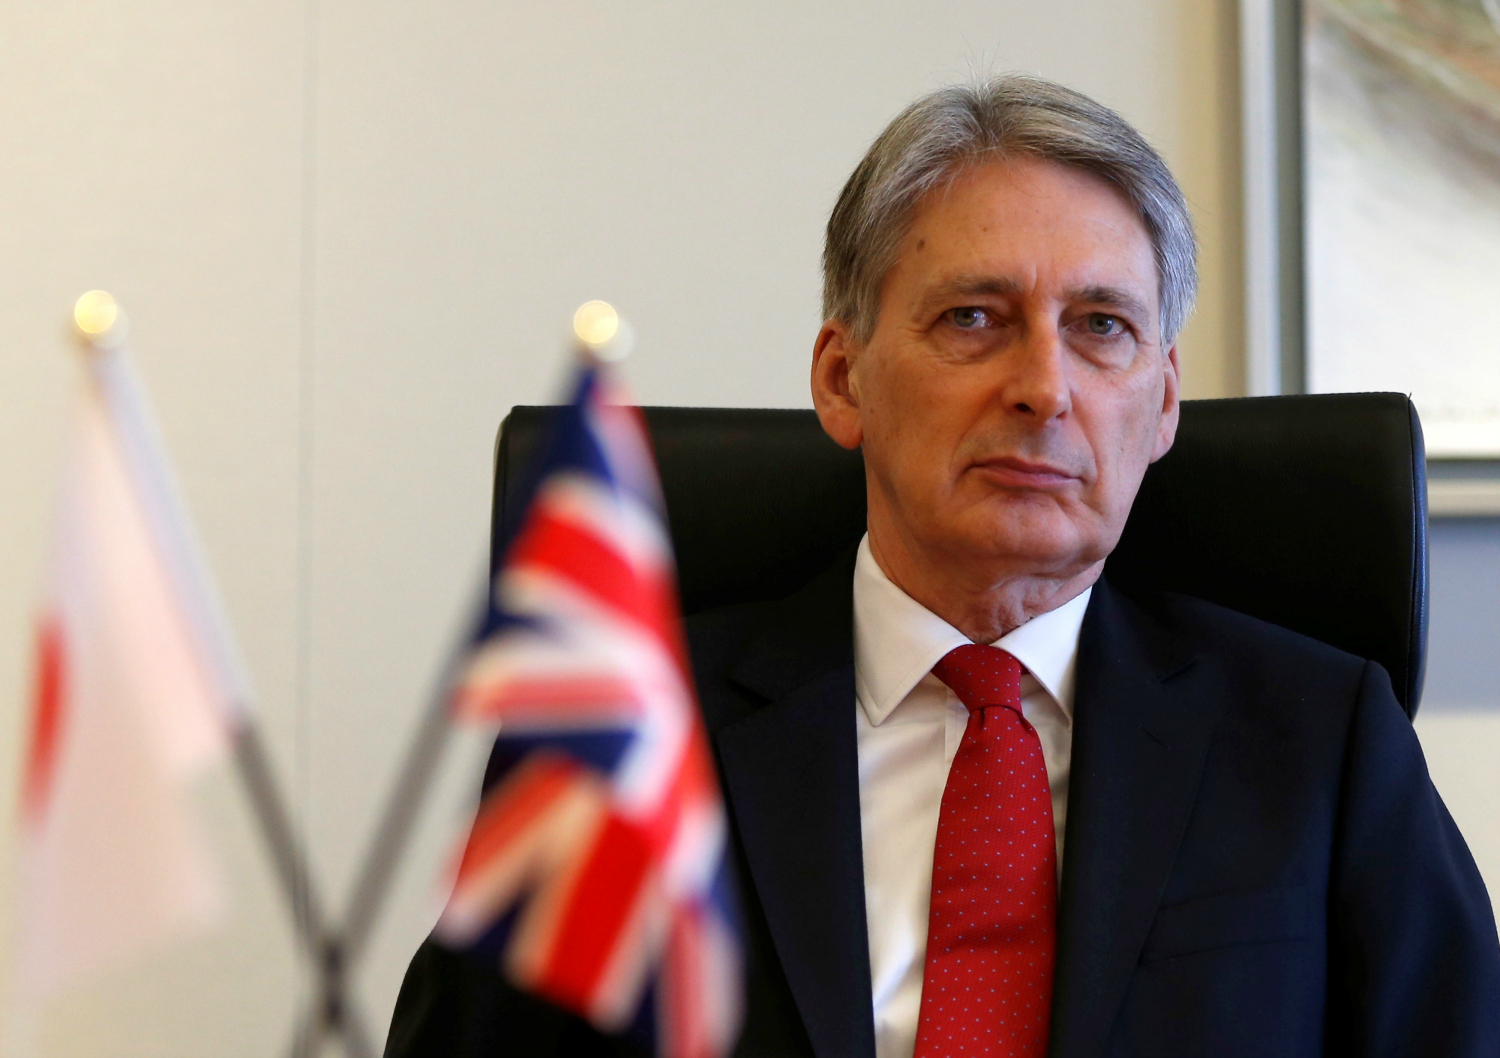 El gobierno británico admite que el Brexit será “duro” y “complicado”